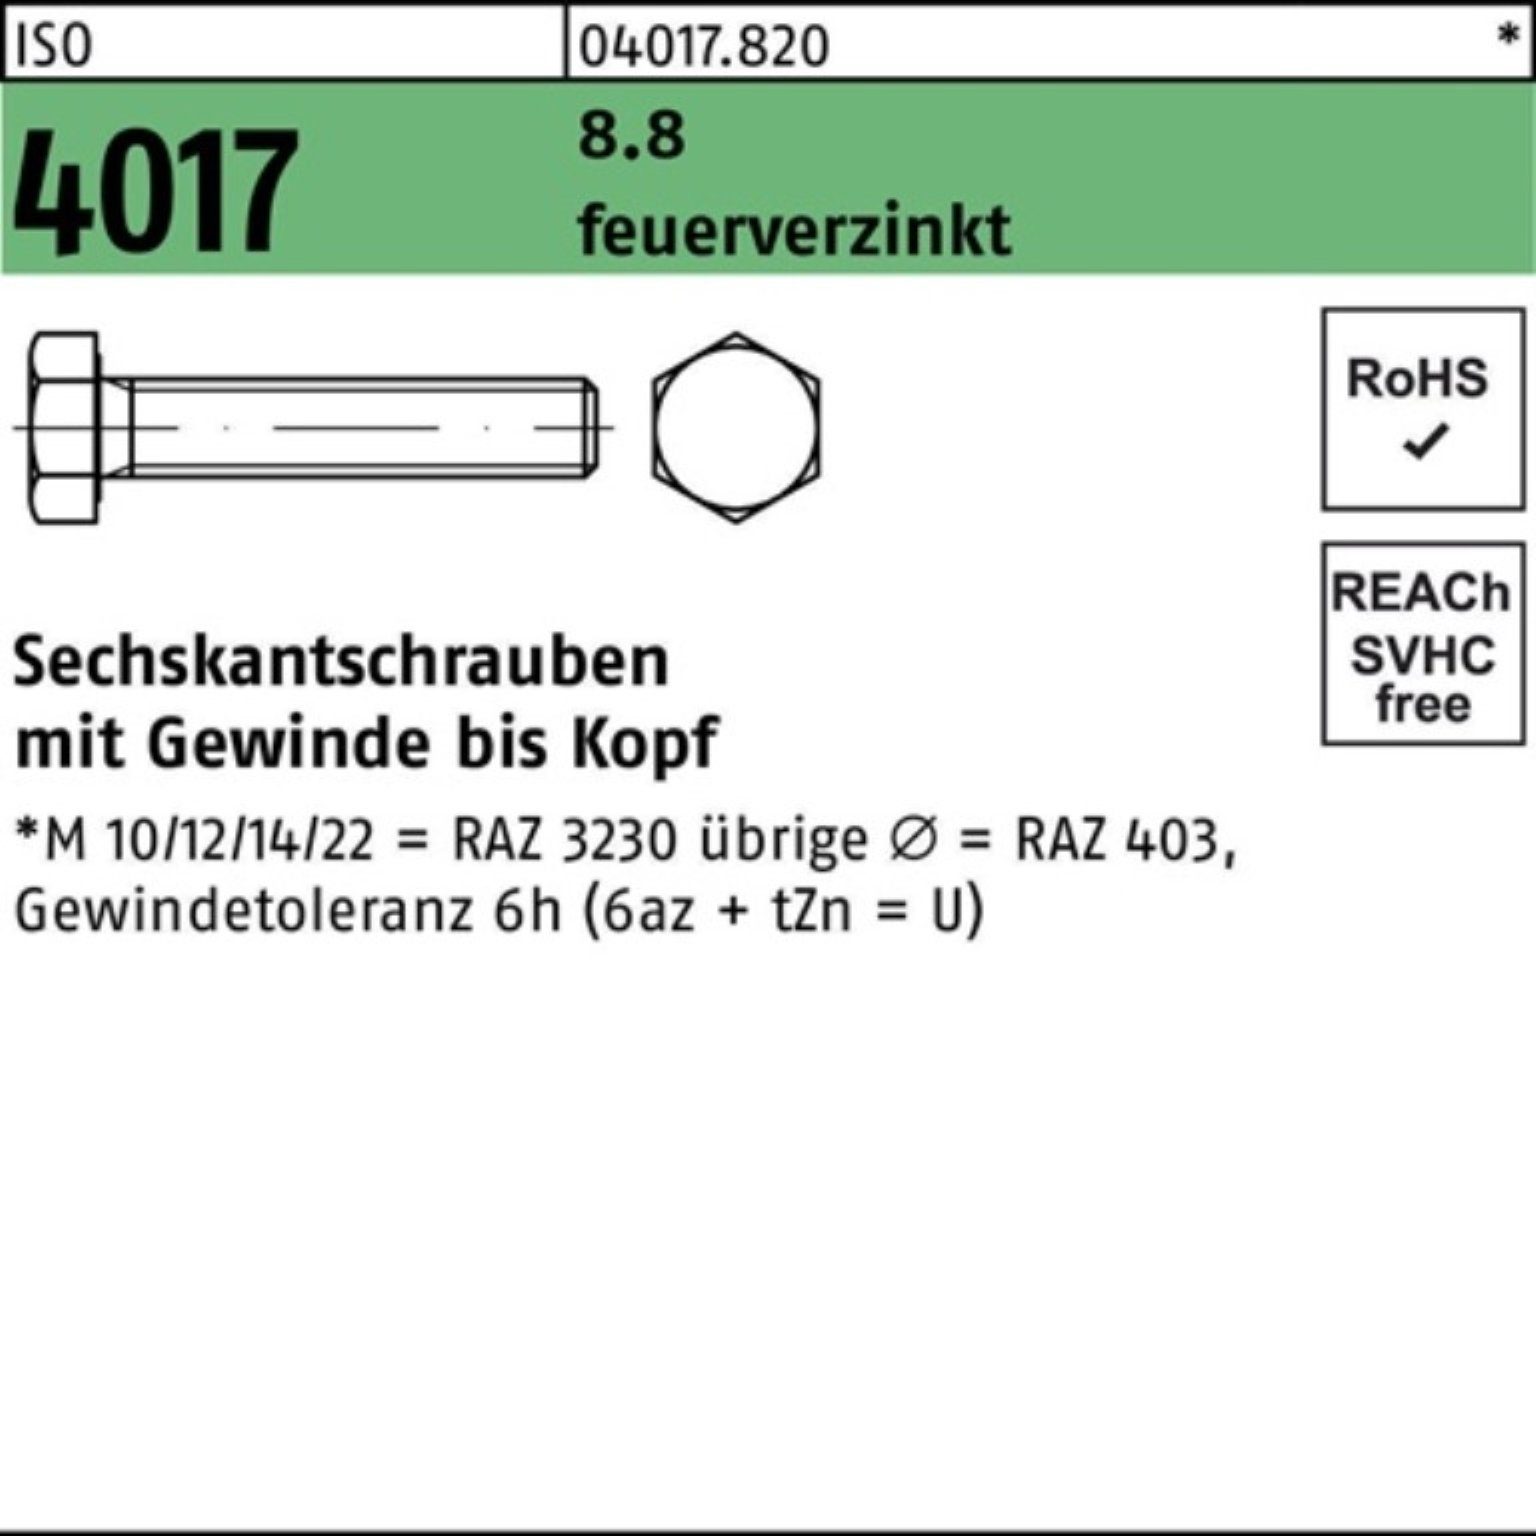 Bufab Sechskantschraube 100er Pack 4017 ISO 25 M16x St VG feuerverz. Sechskantschraube 170 8.8